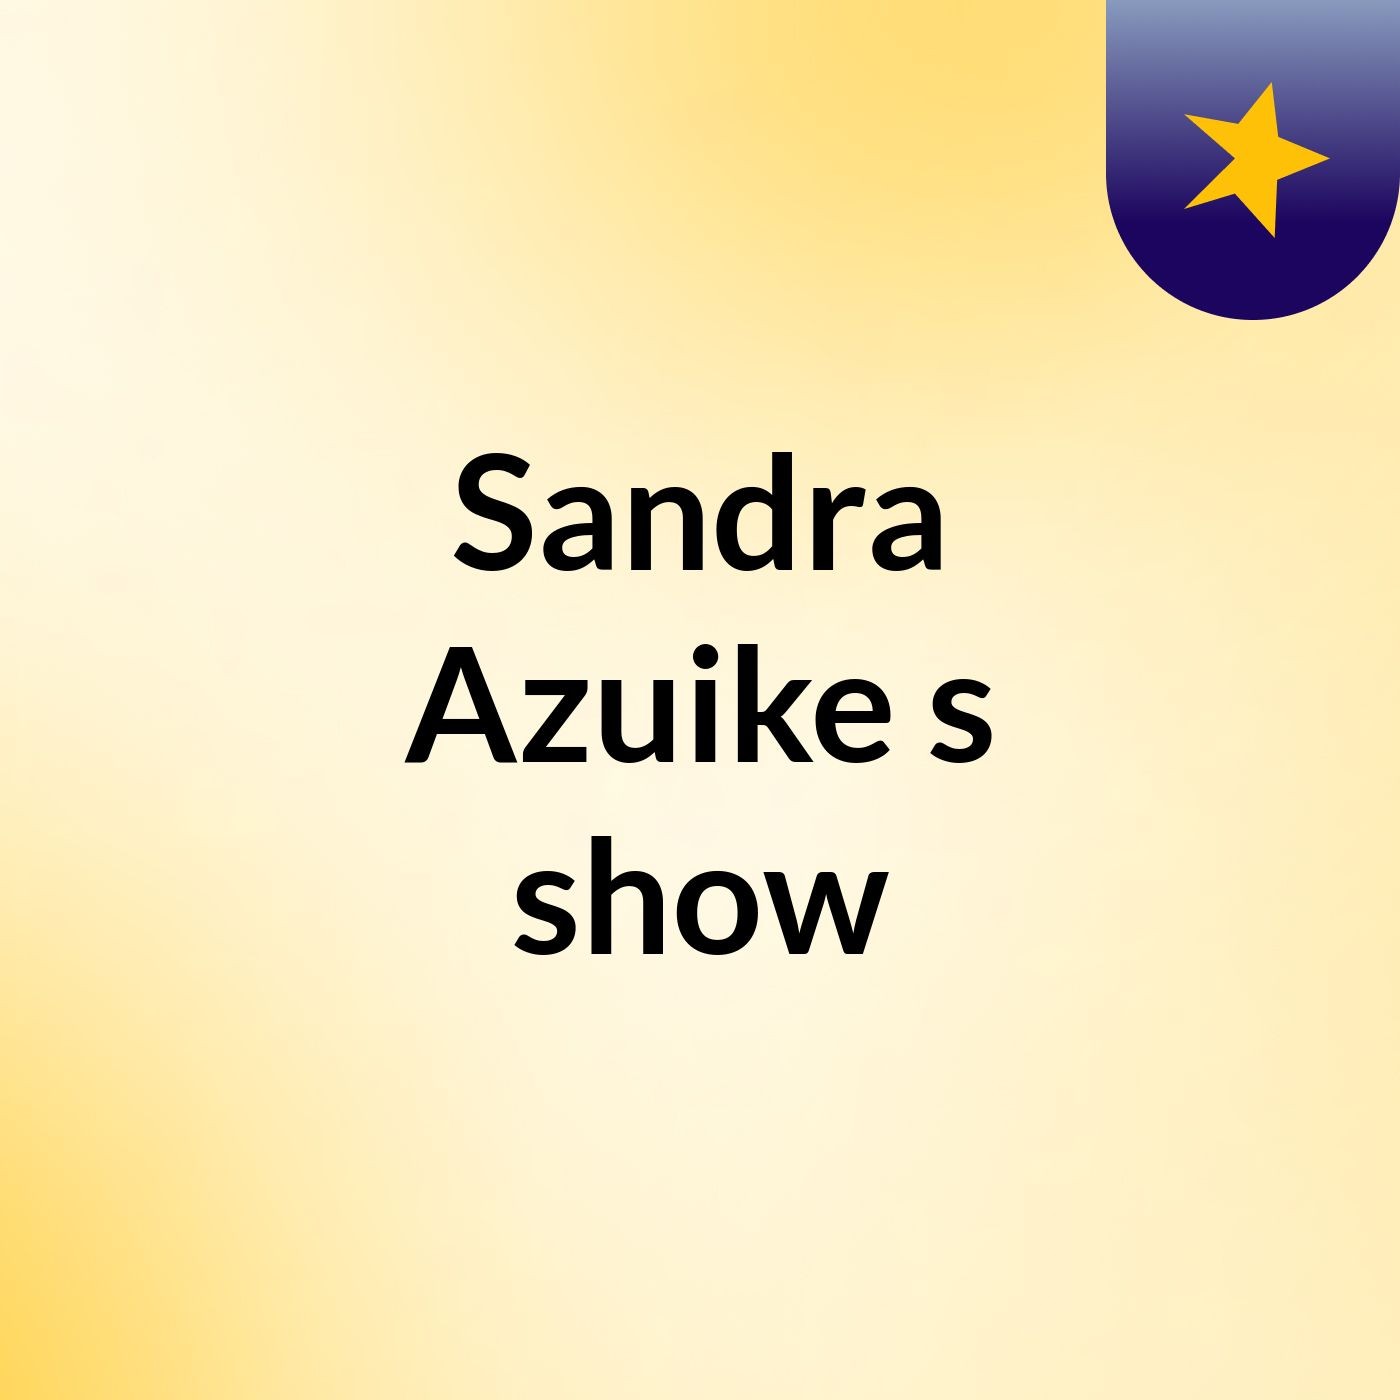 Sandra Azuike's show